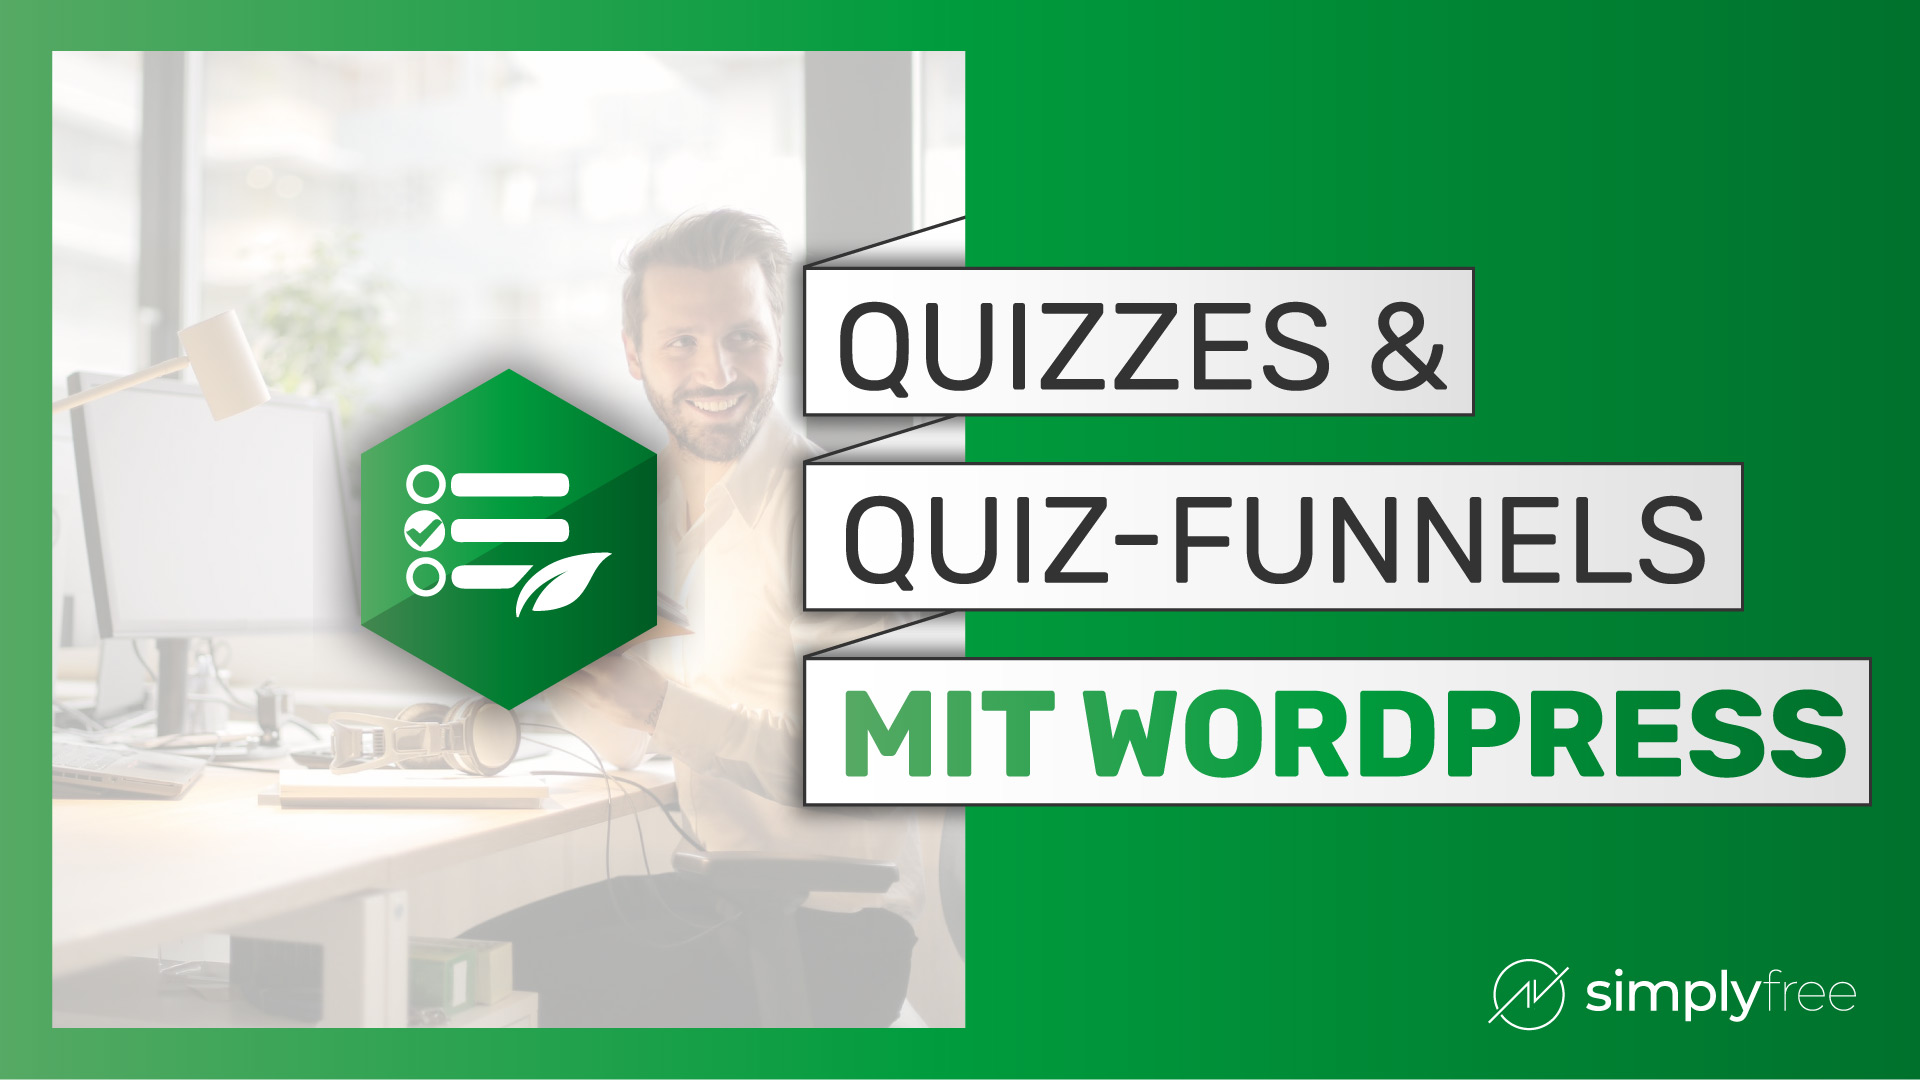 Quizzes &amp; Quiz-funnels zu deiner Wordpress-Website hinzufügen – Freelancer werden